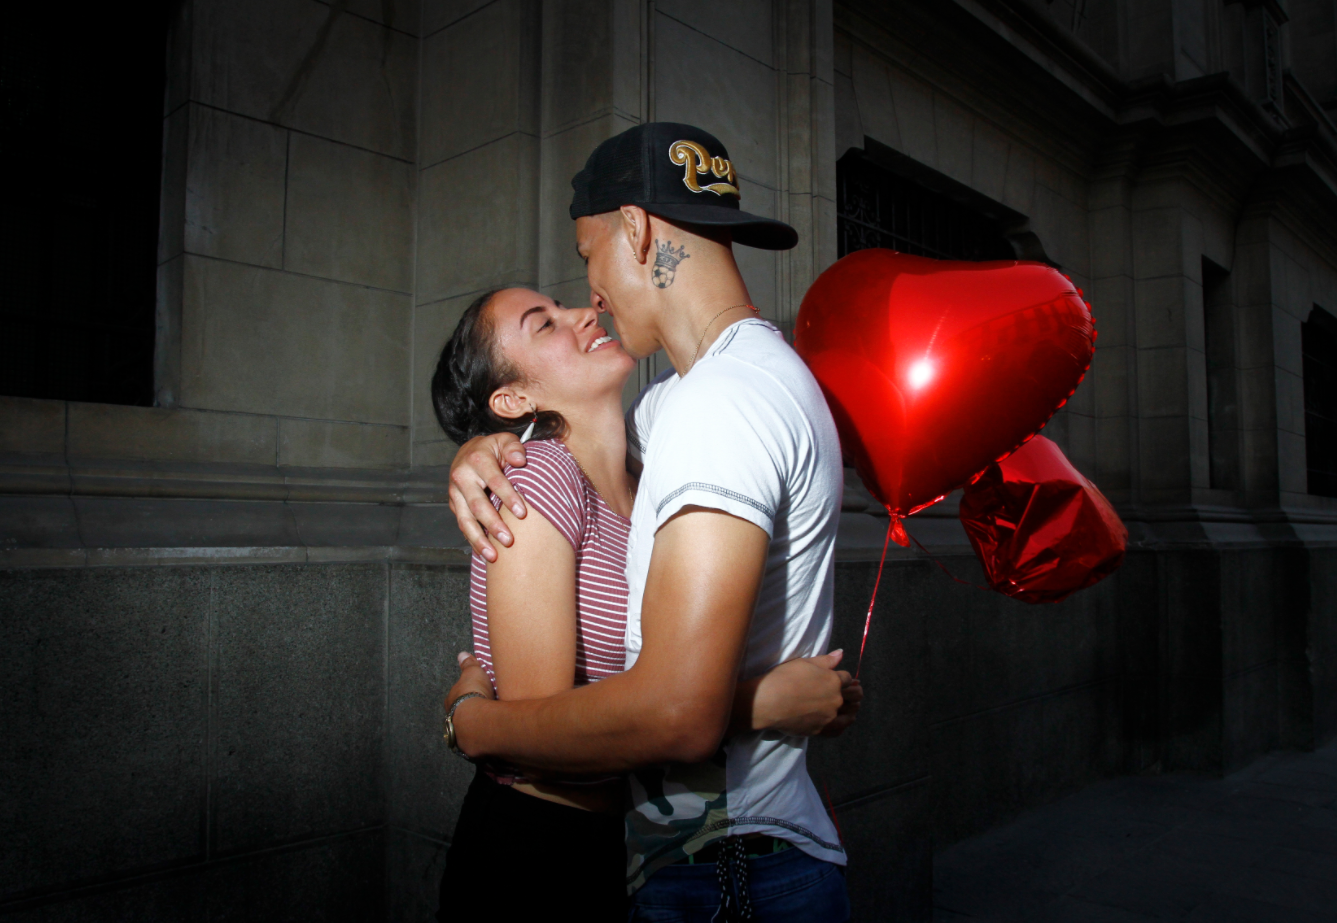 Feliz San Valentin: las mejores frases e imágenes del día del amor y la  amistad | 14 de febrero | dedicatorias | Tendencias | La República